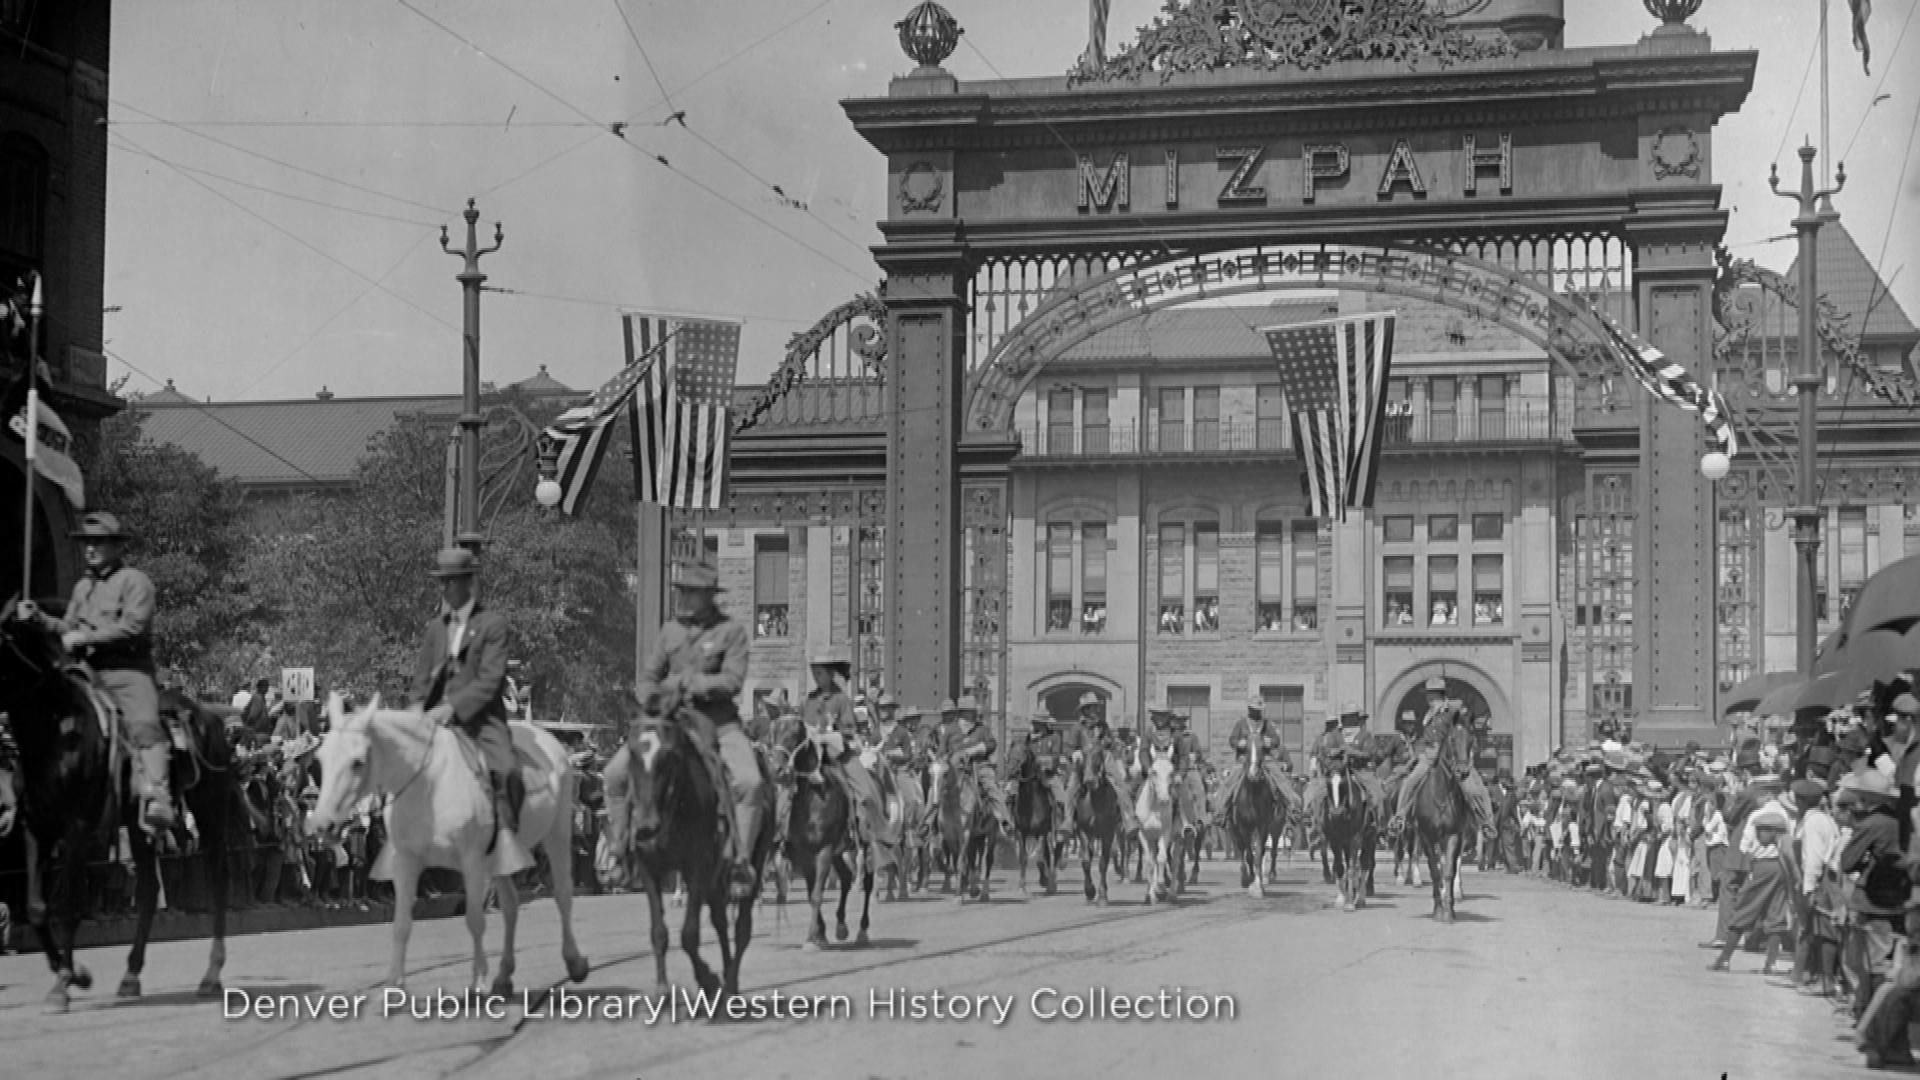 Arcul Union Station (credit: Biblioteca Publică Denver, colecția de Istorie Occidentală)'s arch (credit: Denver Public Library, Western History Collection)